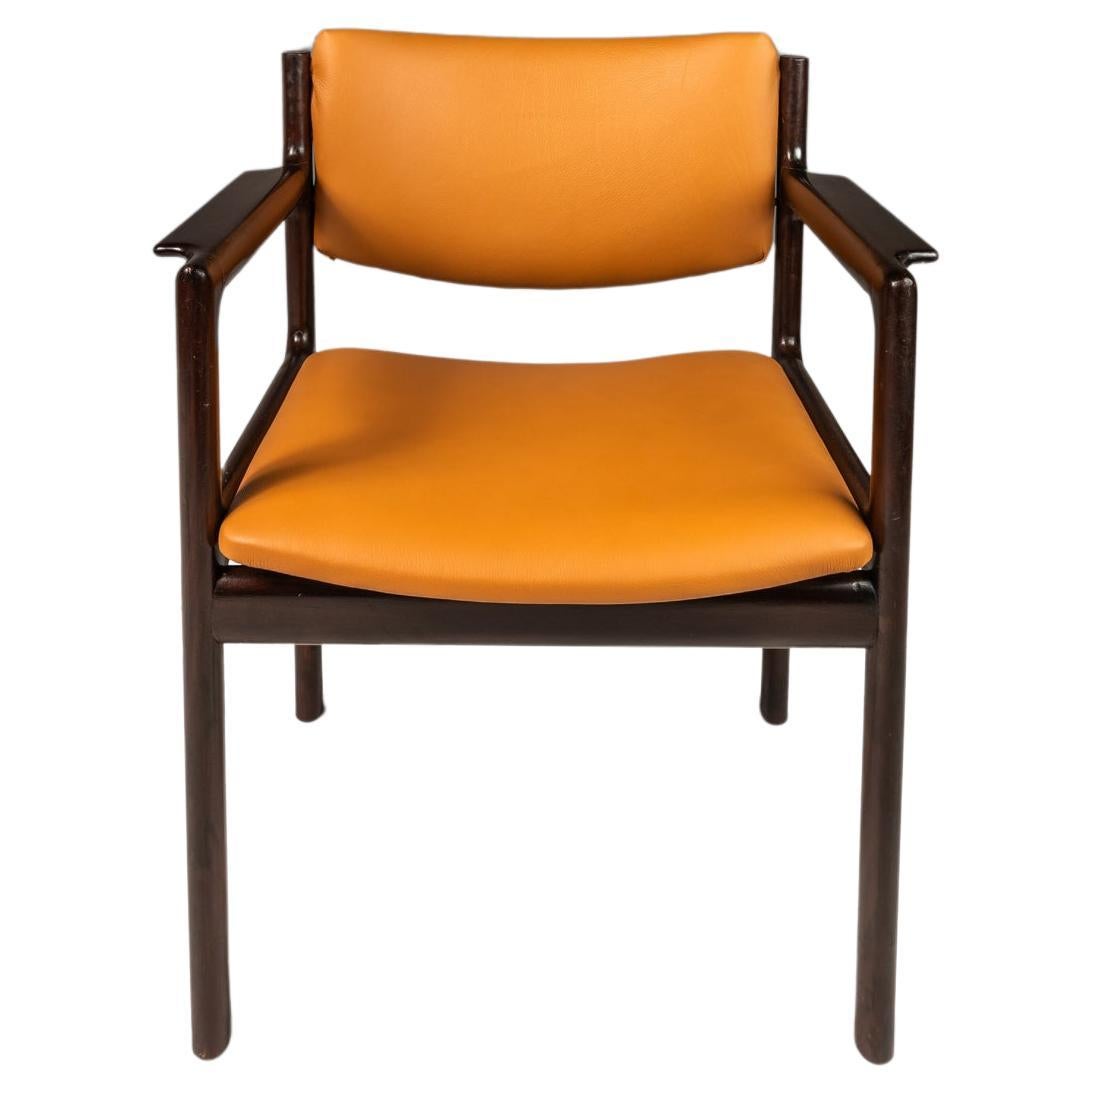 Dänischer moderner dänischer Sessel aus Mahagoni und Leder, dänische Importe aus Übersee, ca. 1960er Jahre